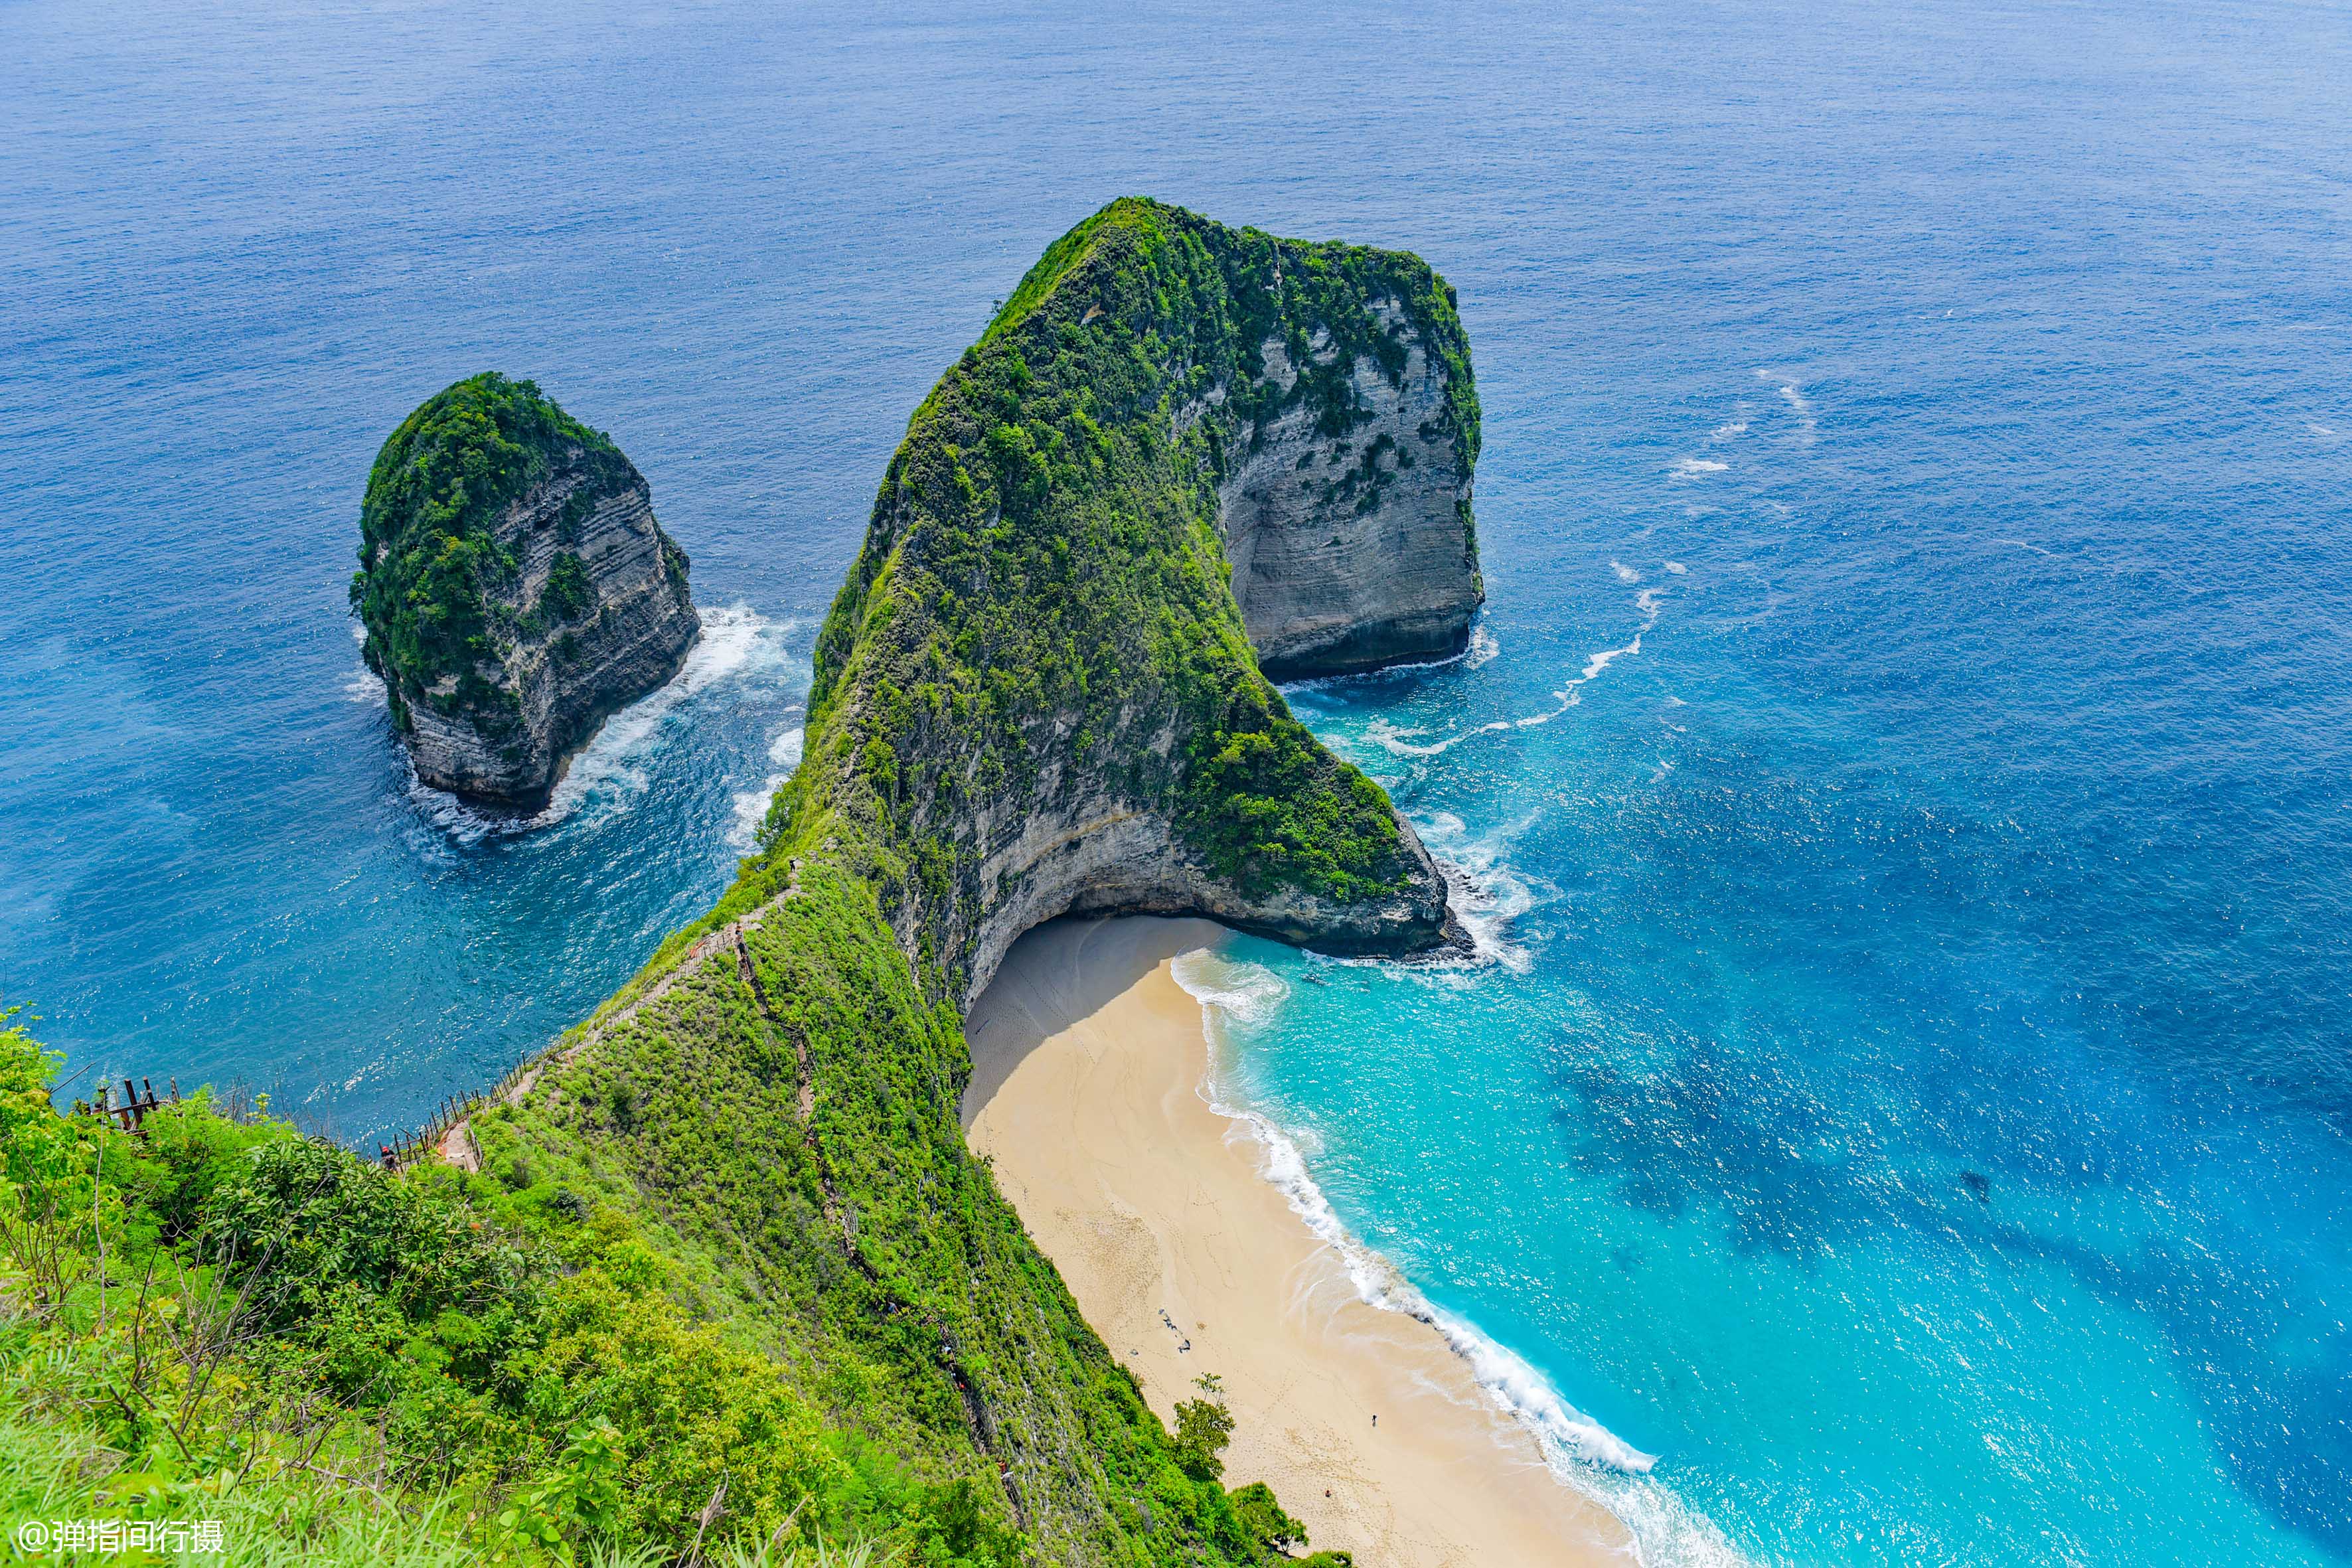 巴厘岛附近的原始小岛,海岛风光奇特,标志景点形似恐龙